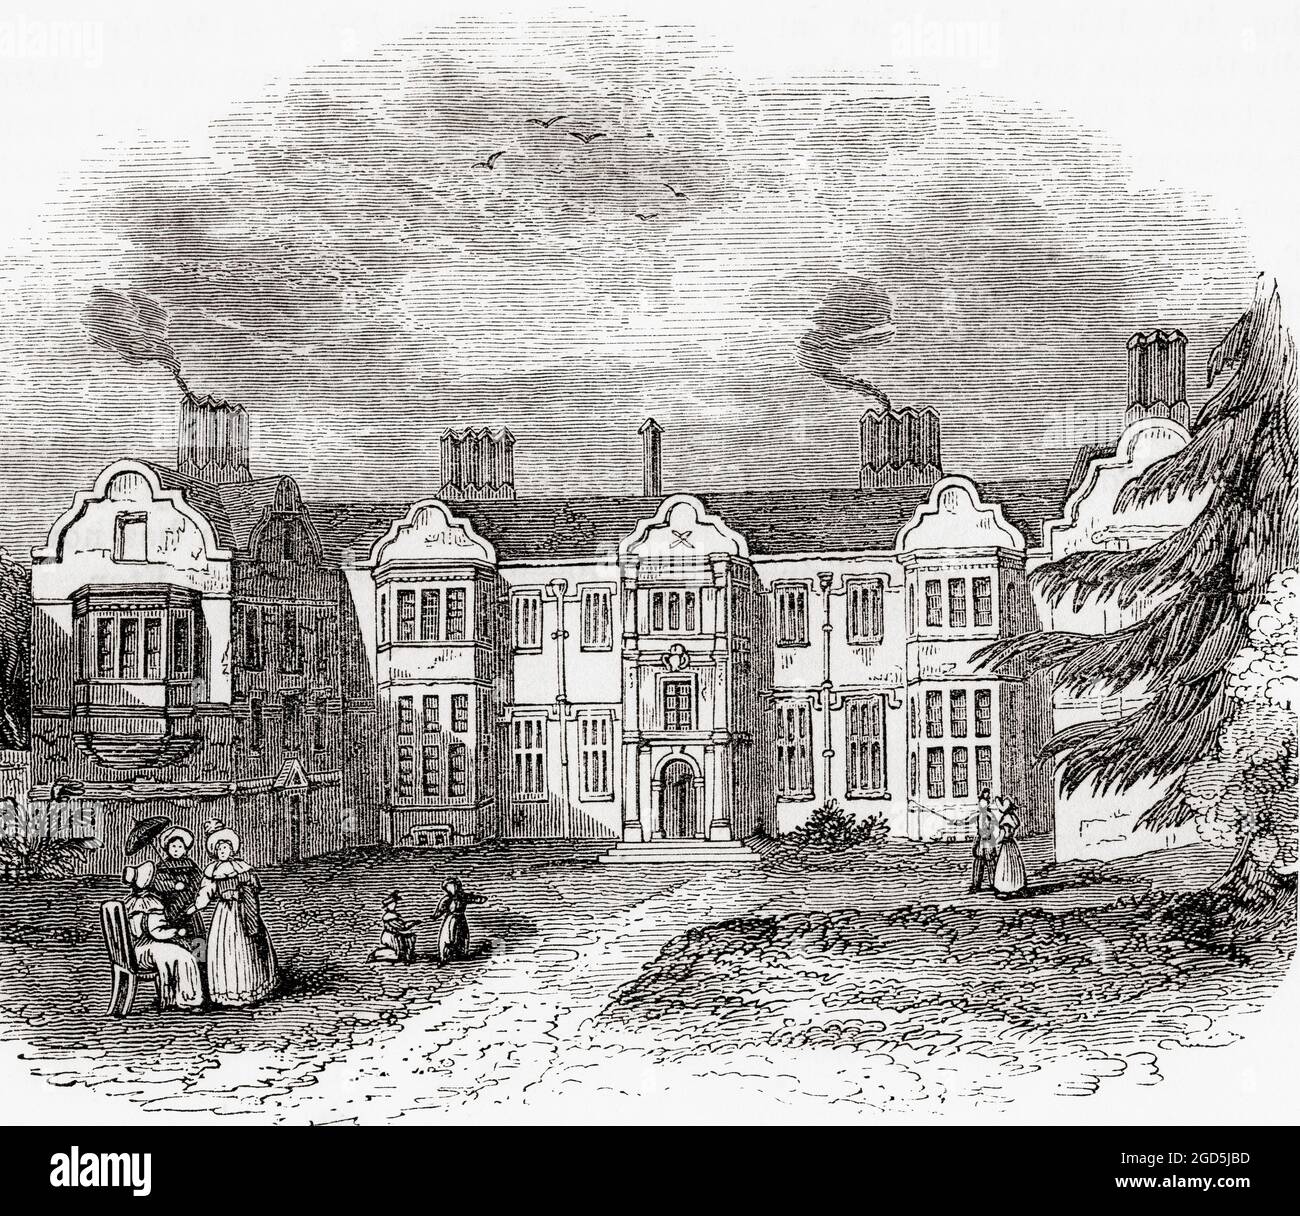 Ladye Place, Hurley, in der englischen Grafschaft, gesehen hier im frühen 19. Jahrhundert. Das Gebäude, das früher Hurley Priory war, wurde das Zuhause der Barons Lovelace. Aus dem malerischen England, seine Wahrzeichen und historischen Stätten, veröffentlicht 1891. Stockfoto